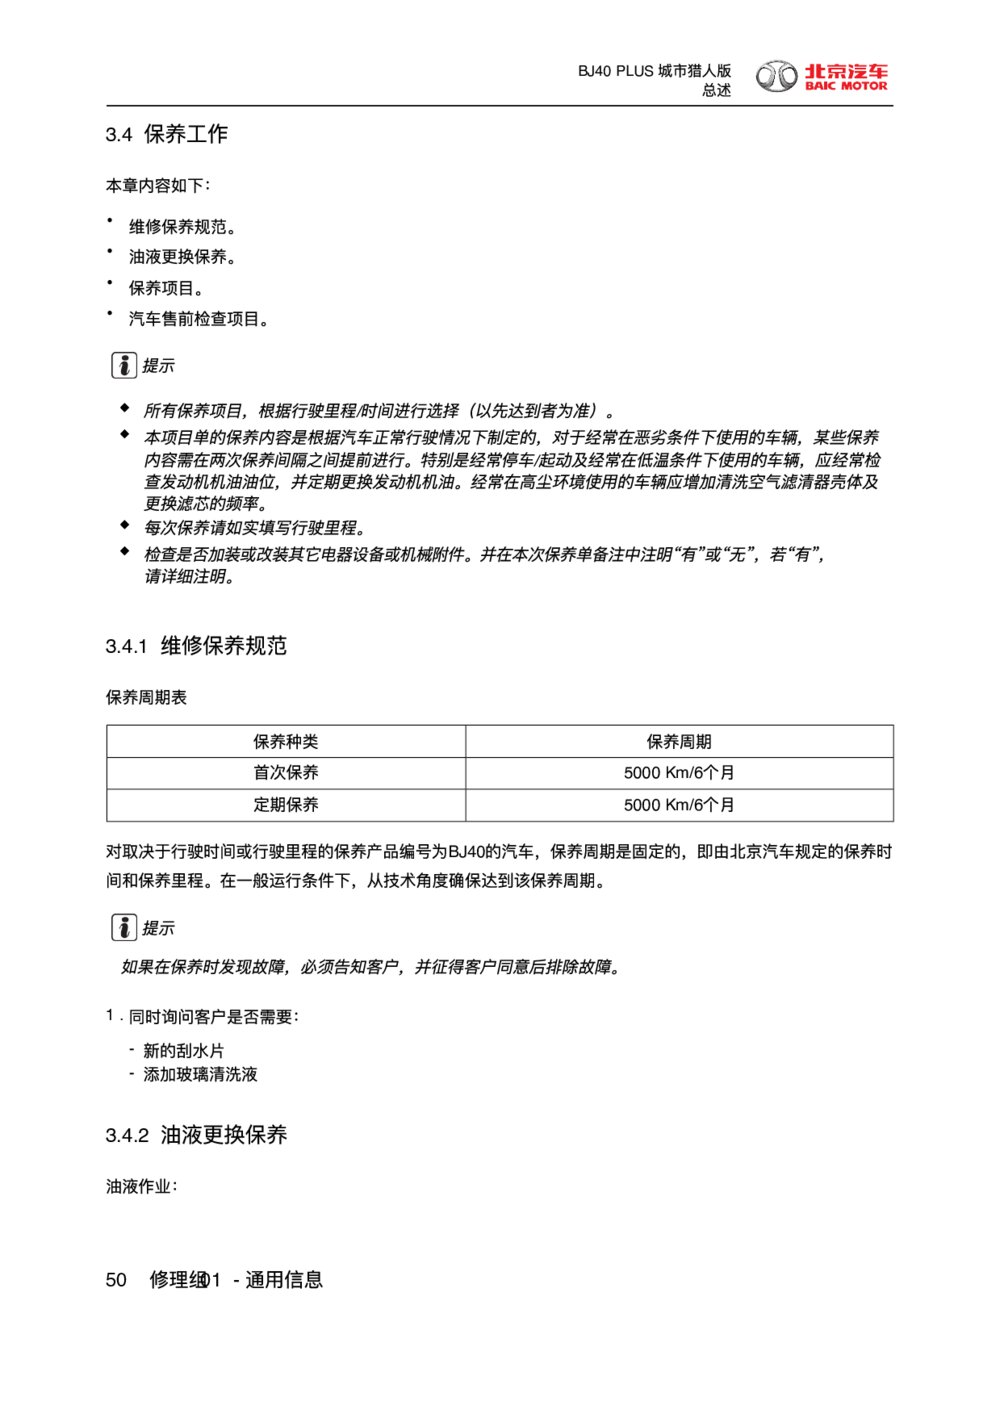 2018款北京BJ40 PLUS维修保养规范维修手册1